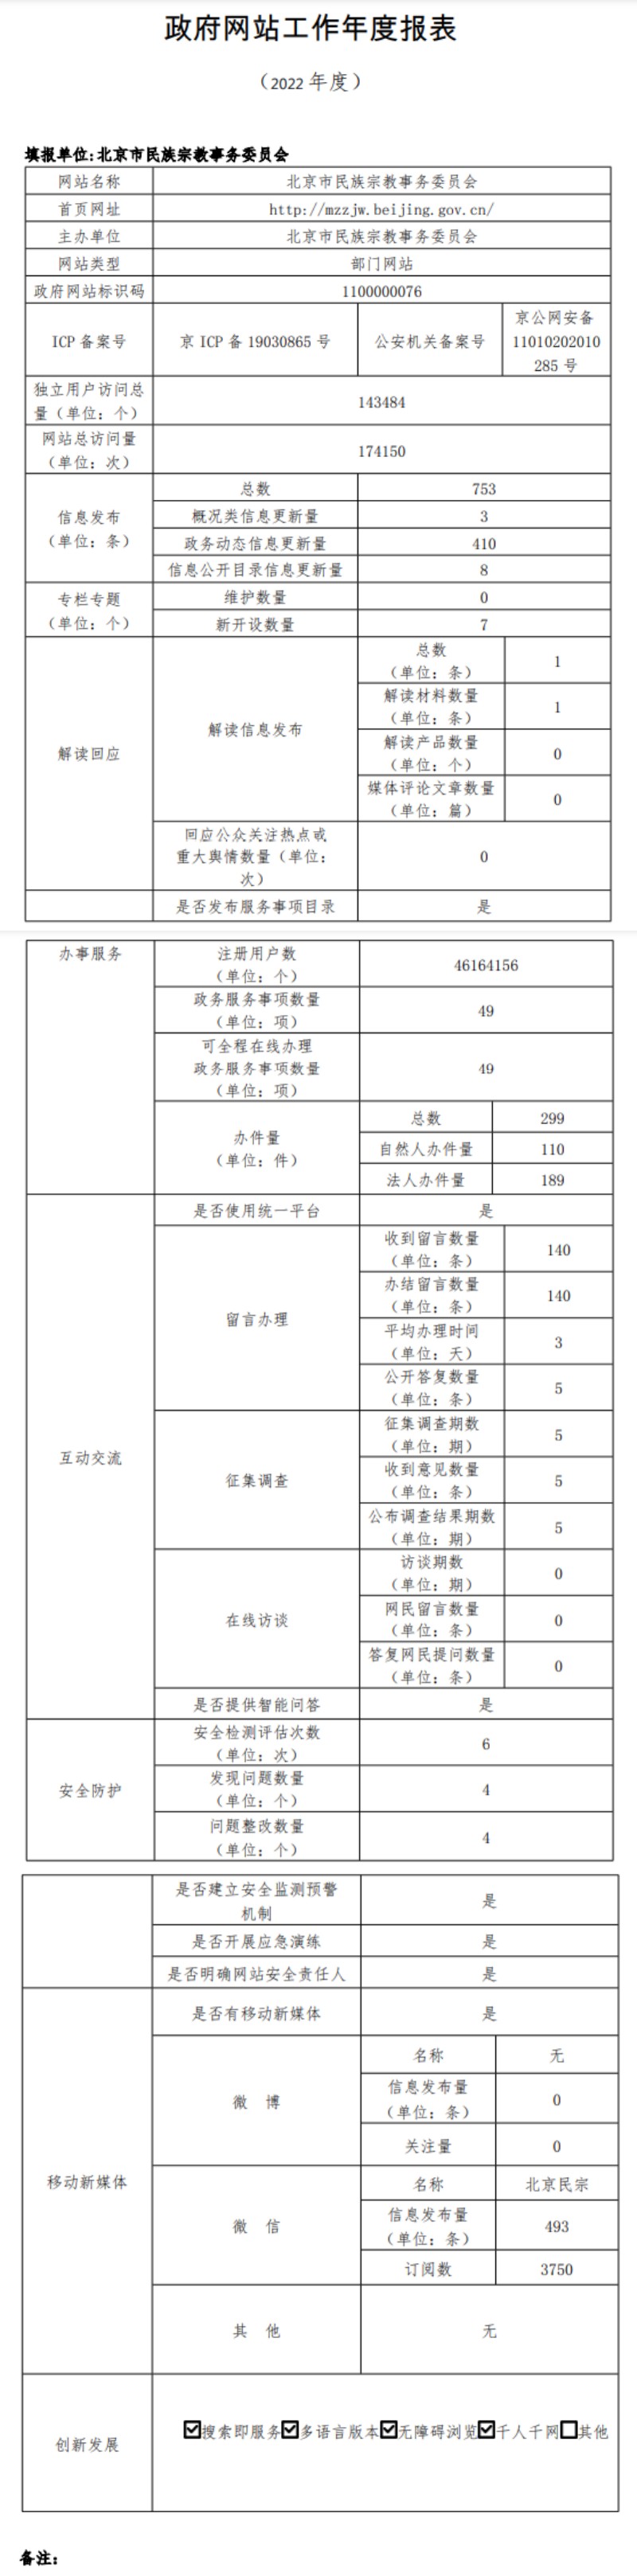 北京市民族宗教事務委員會2022年政府網站年度工作報表